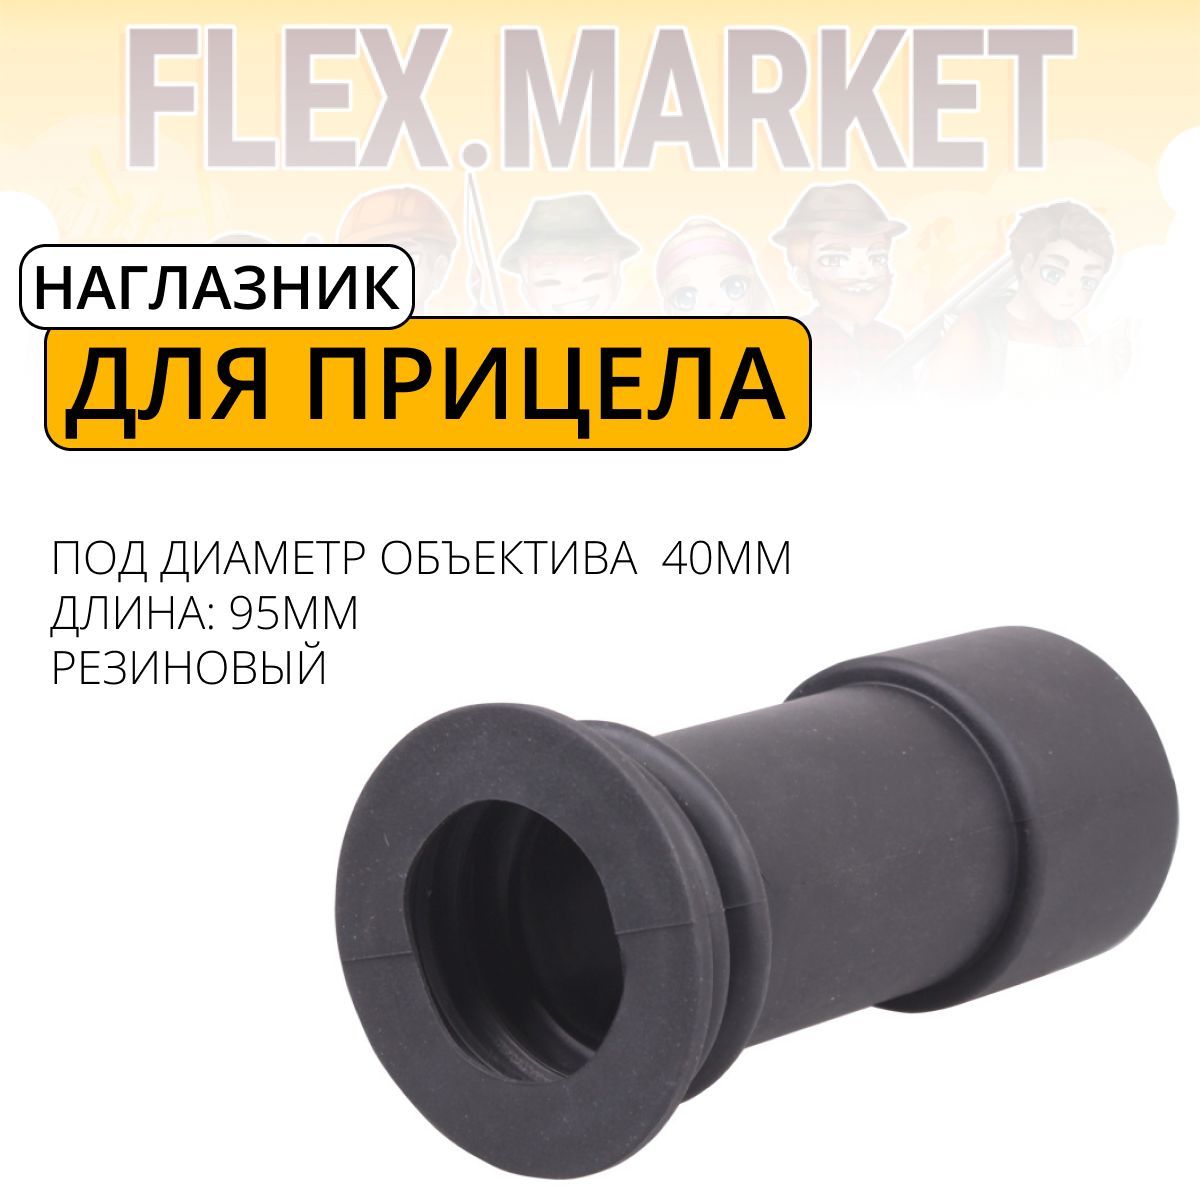 Купить наглазник для оптических прицелов в Москве и СПб – цены на наглазники в магазине AIR-GUN